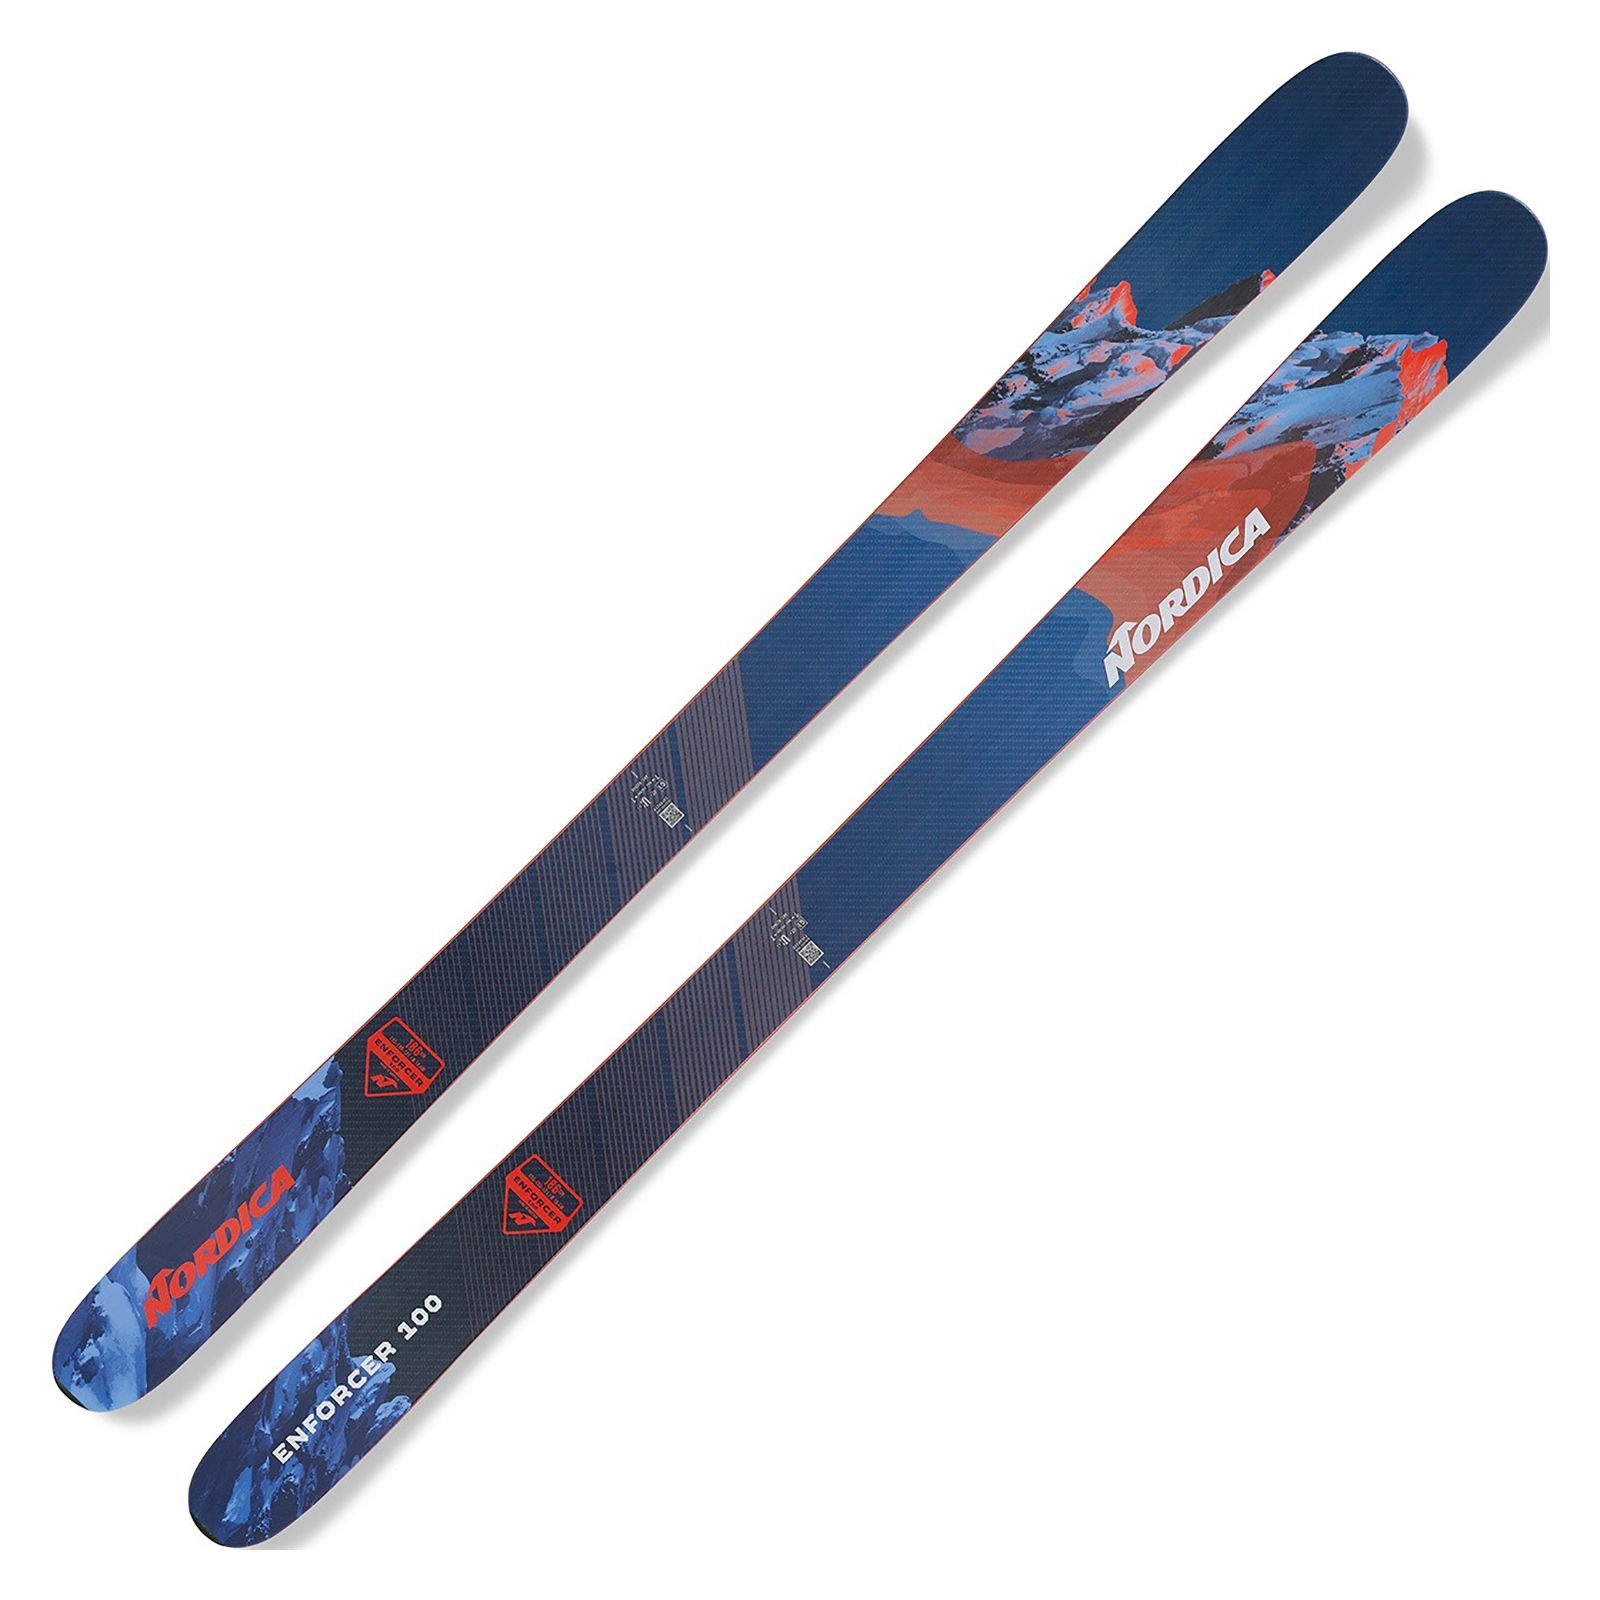 NORDICA Enforcer 100 Ski 2021/22